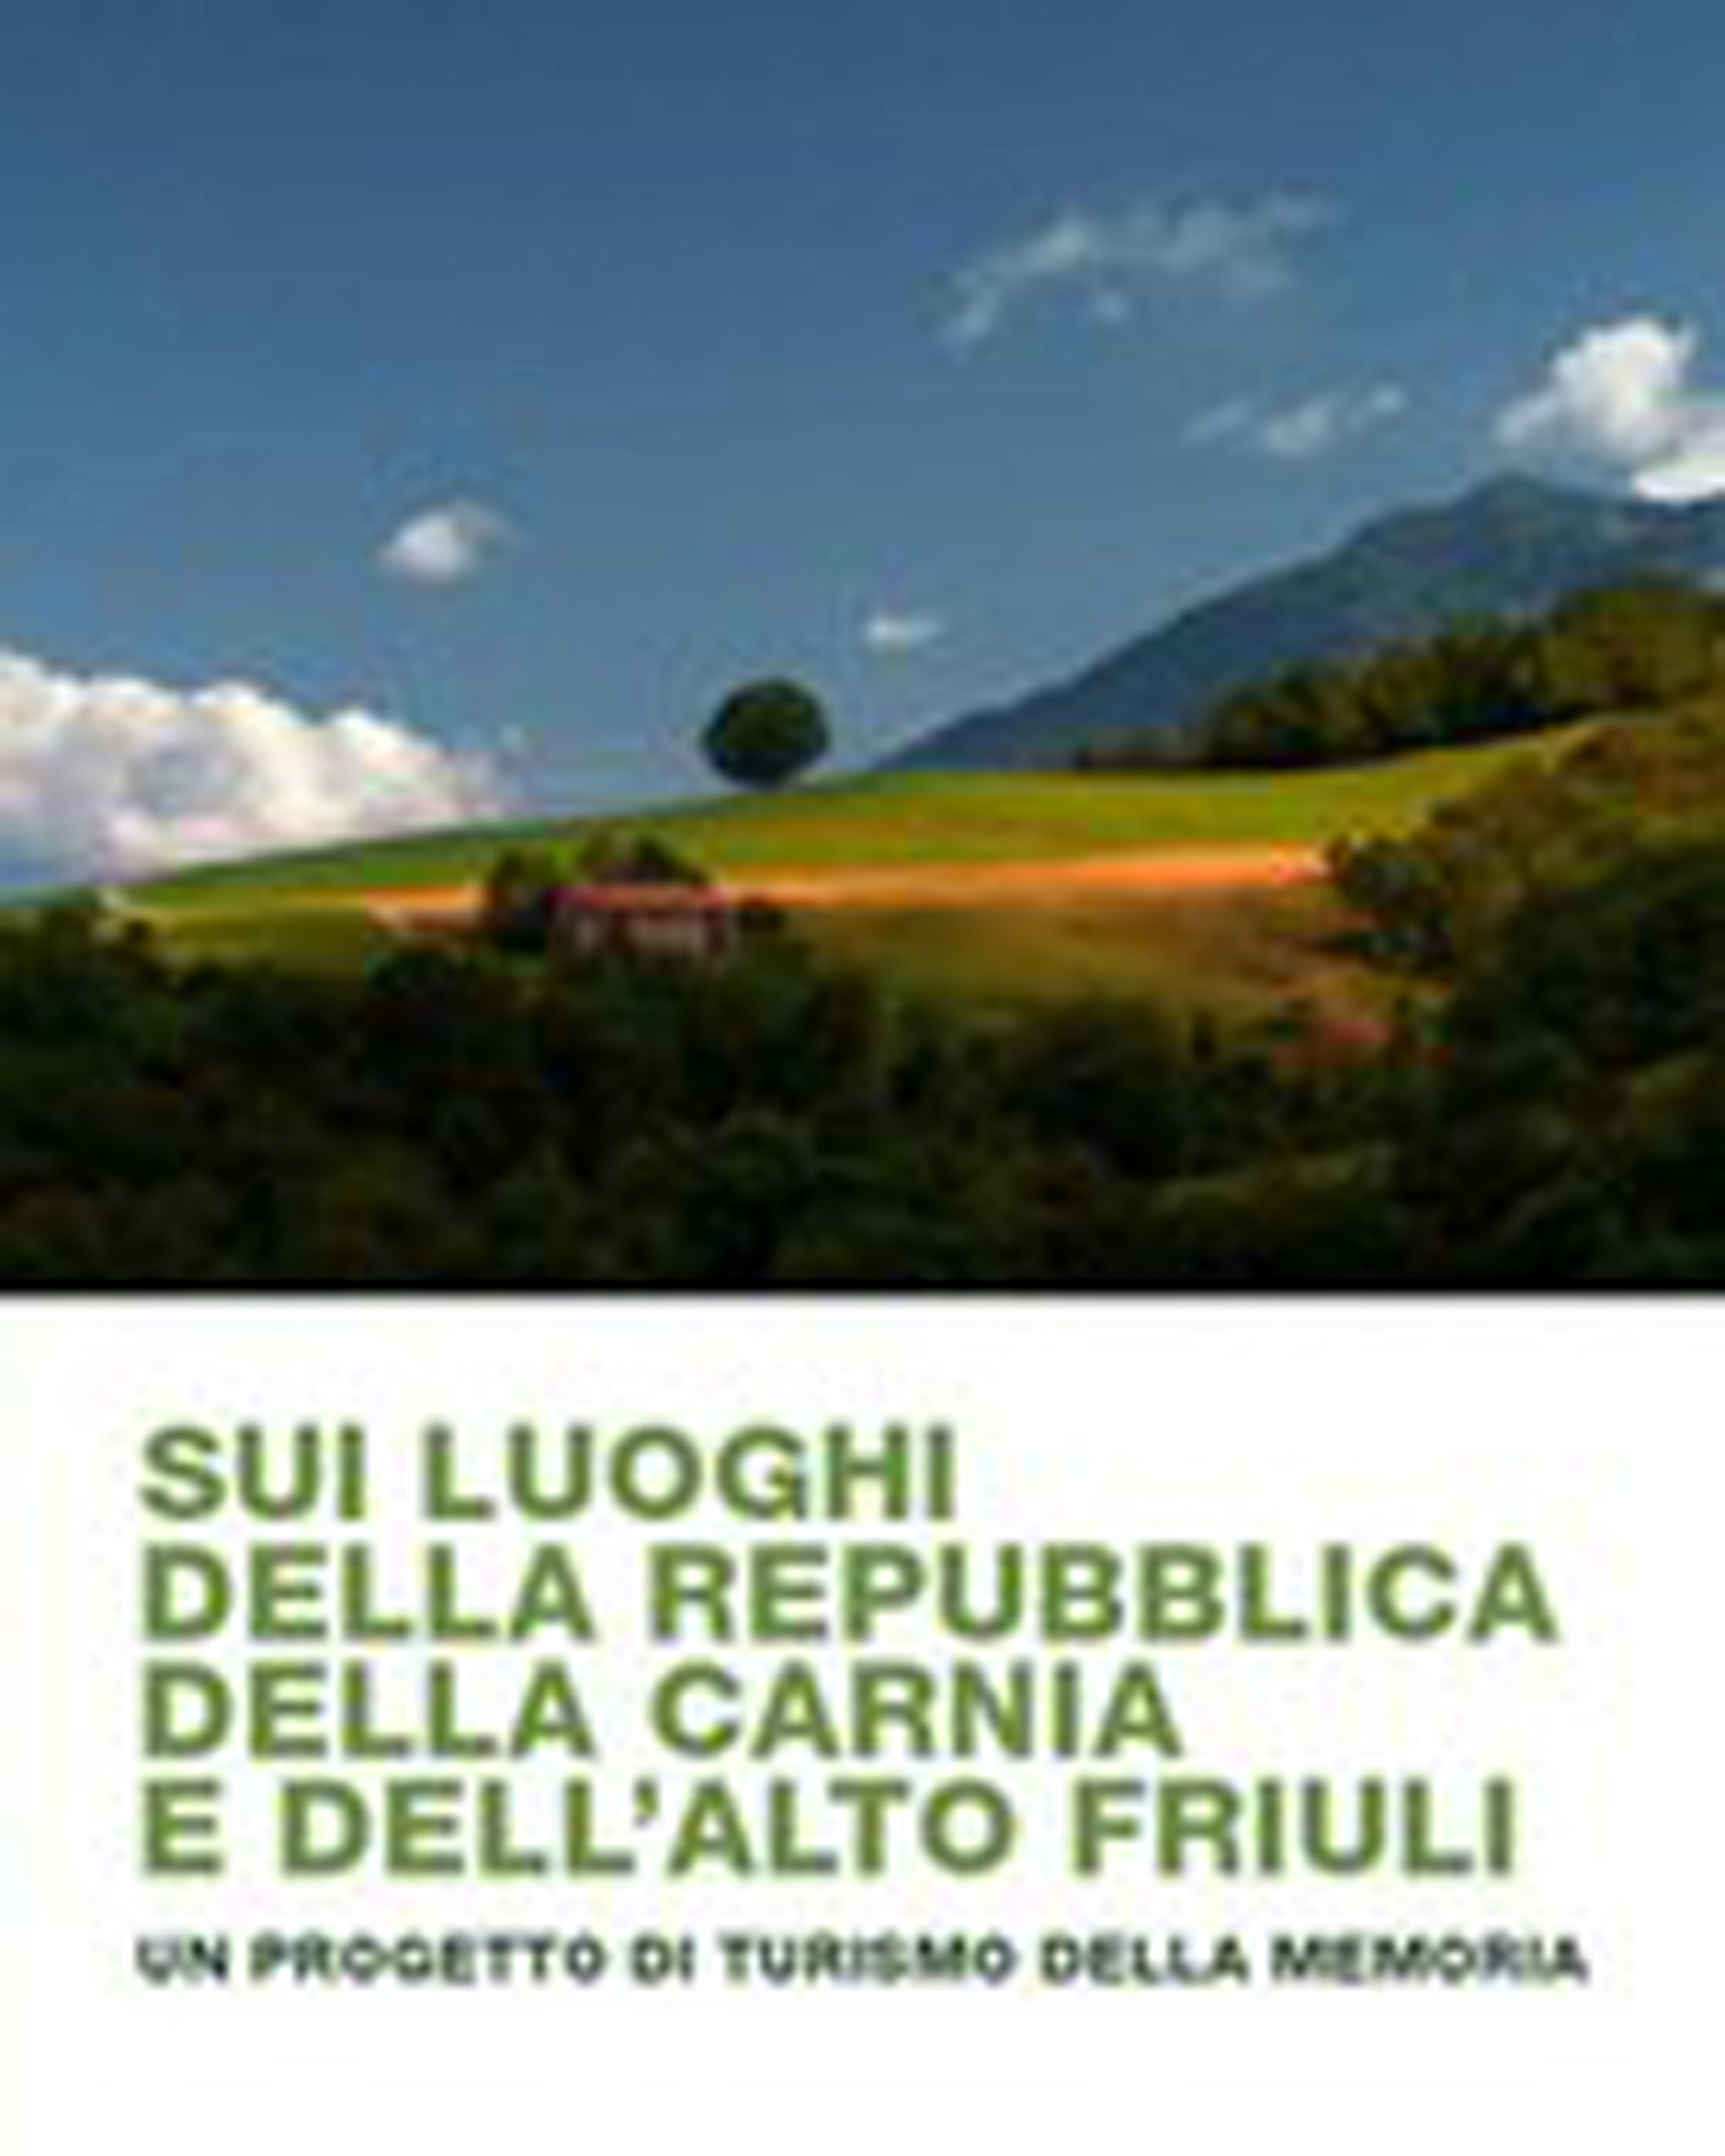 Sui luoghi della Repubblica della Carnia e dell'Alto Friuli - Un progetto di turismo della memoria